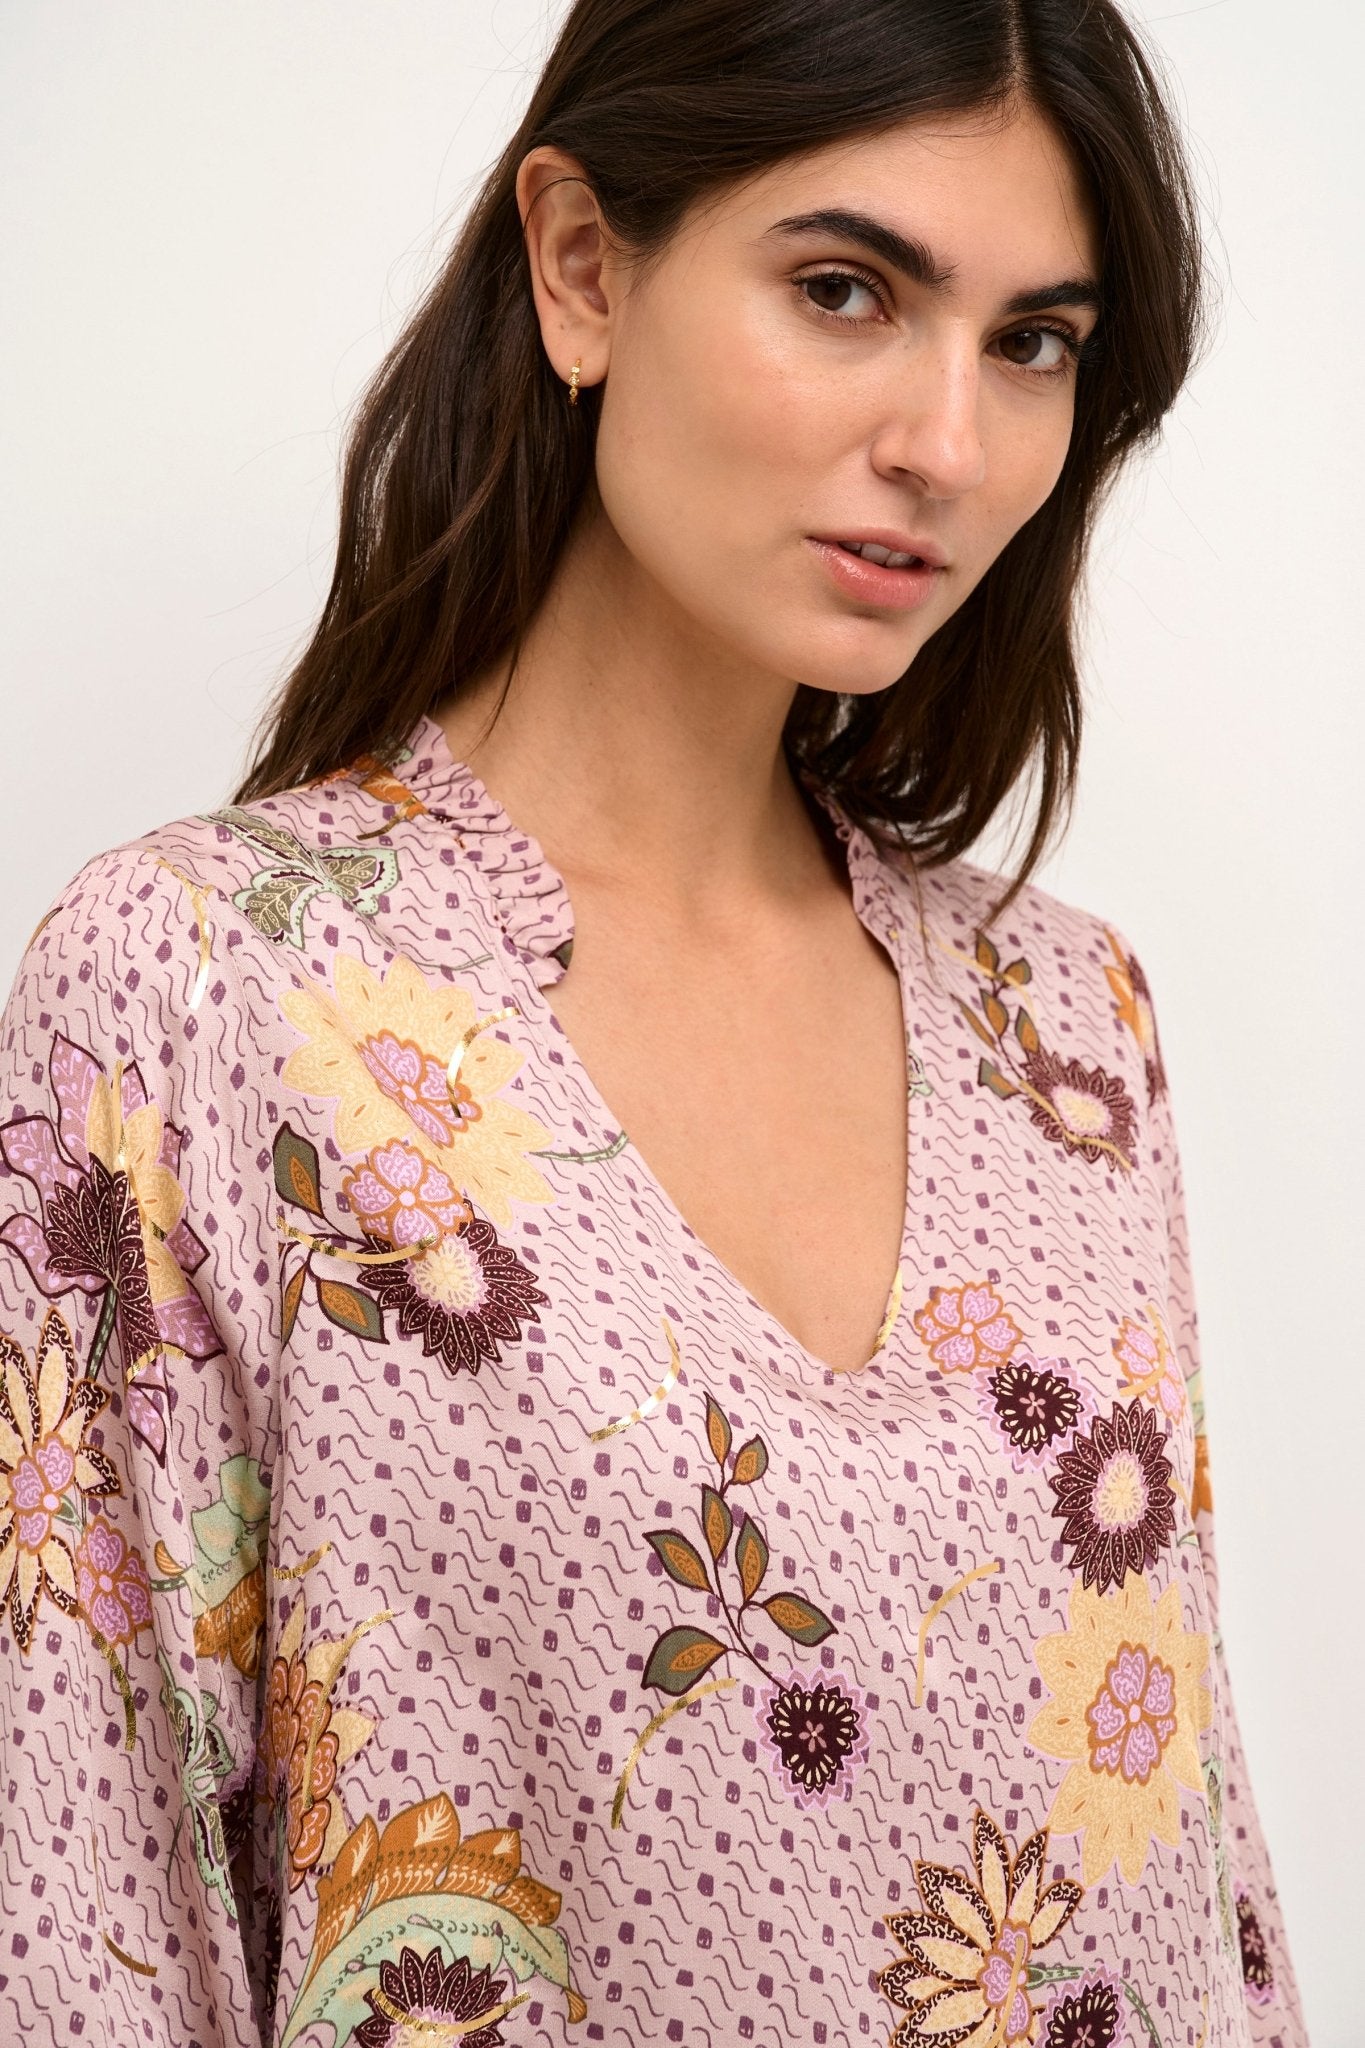 Tamo blouse by Culture - pale mauve - Blue Sky Fashions & Lingerie